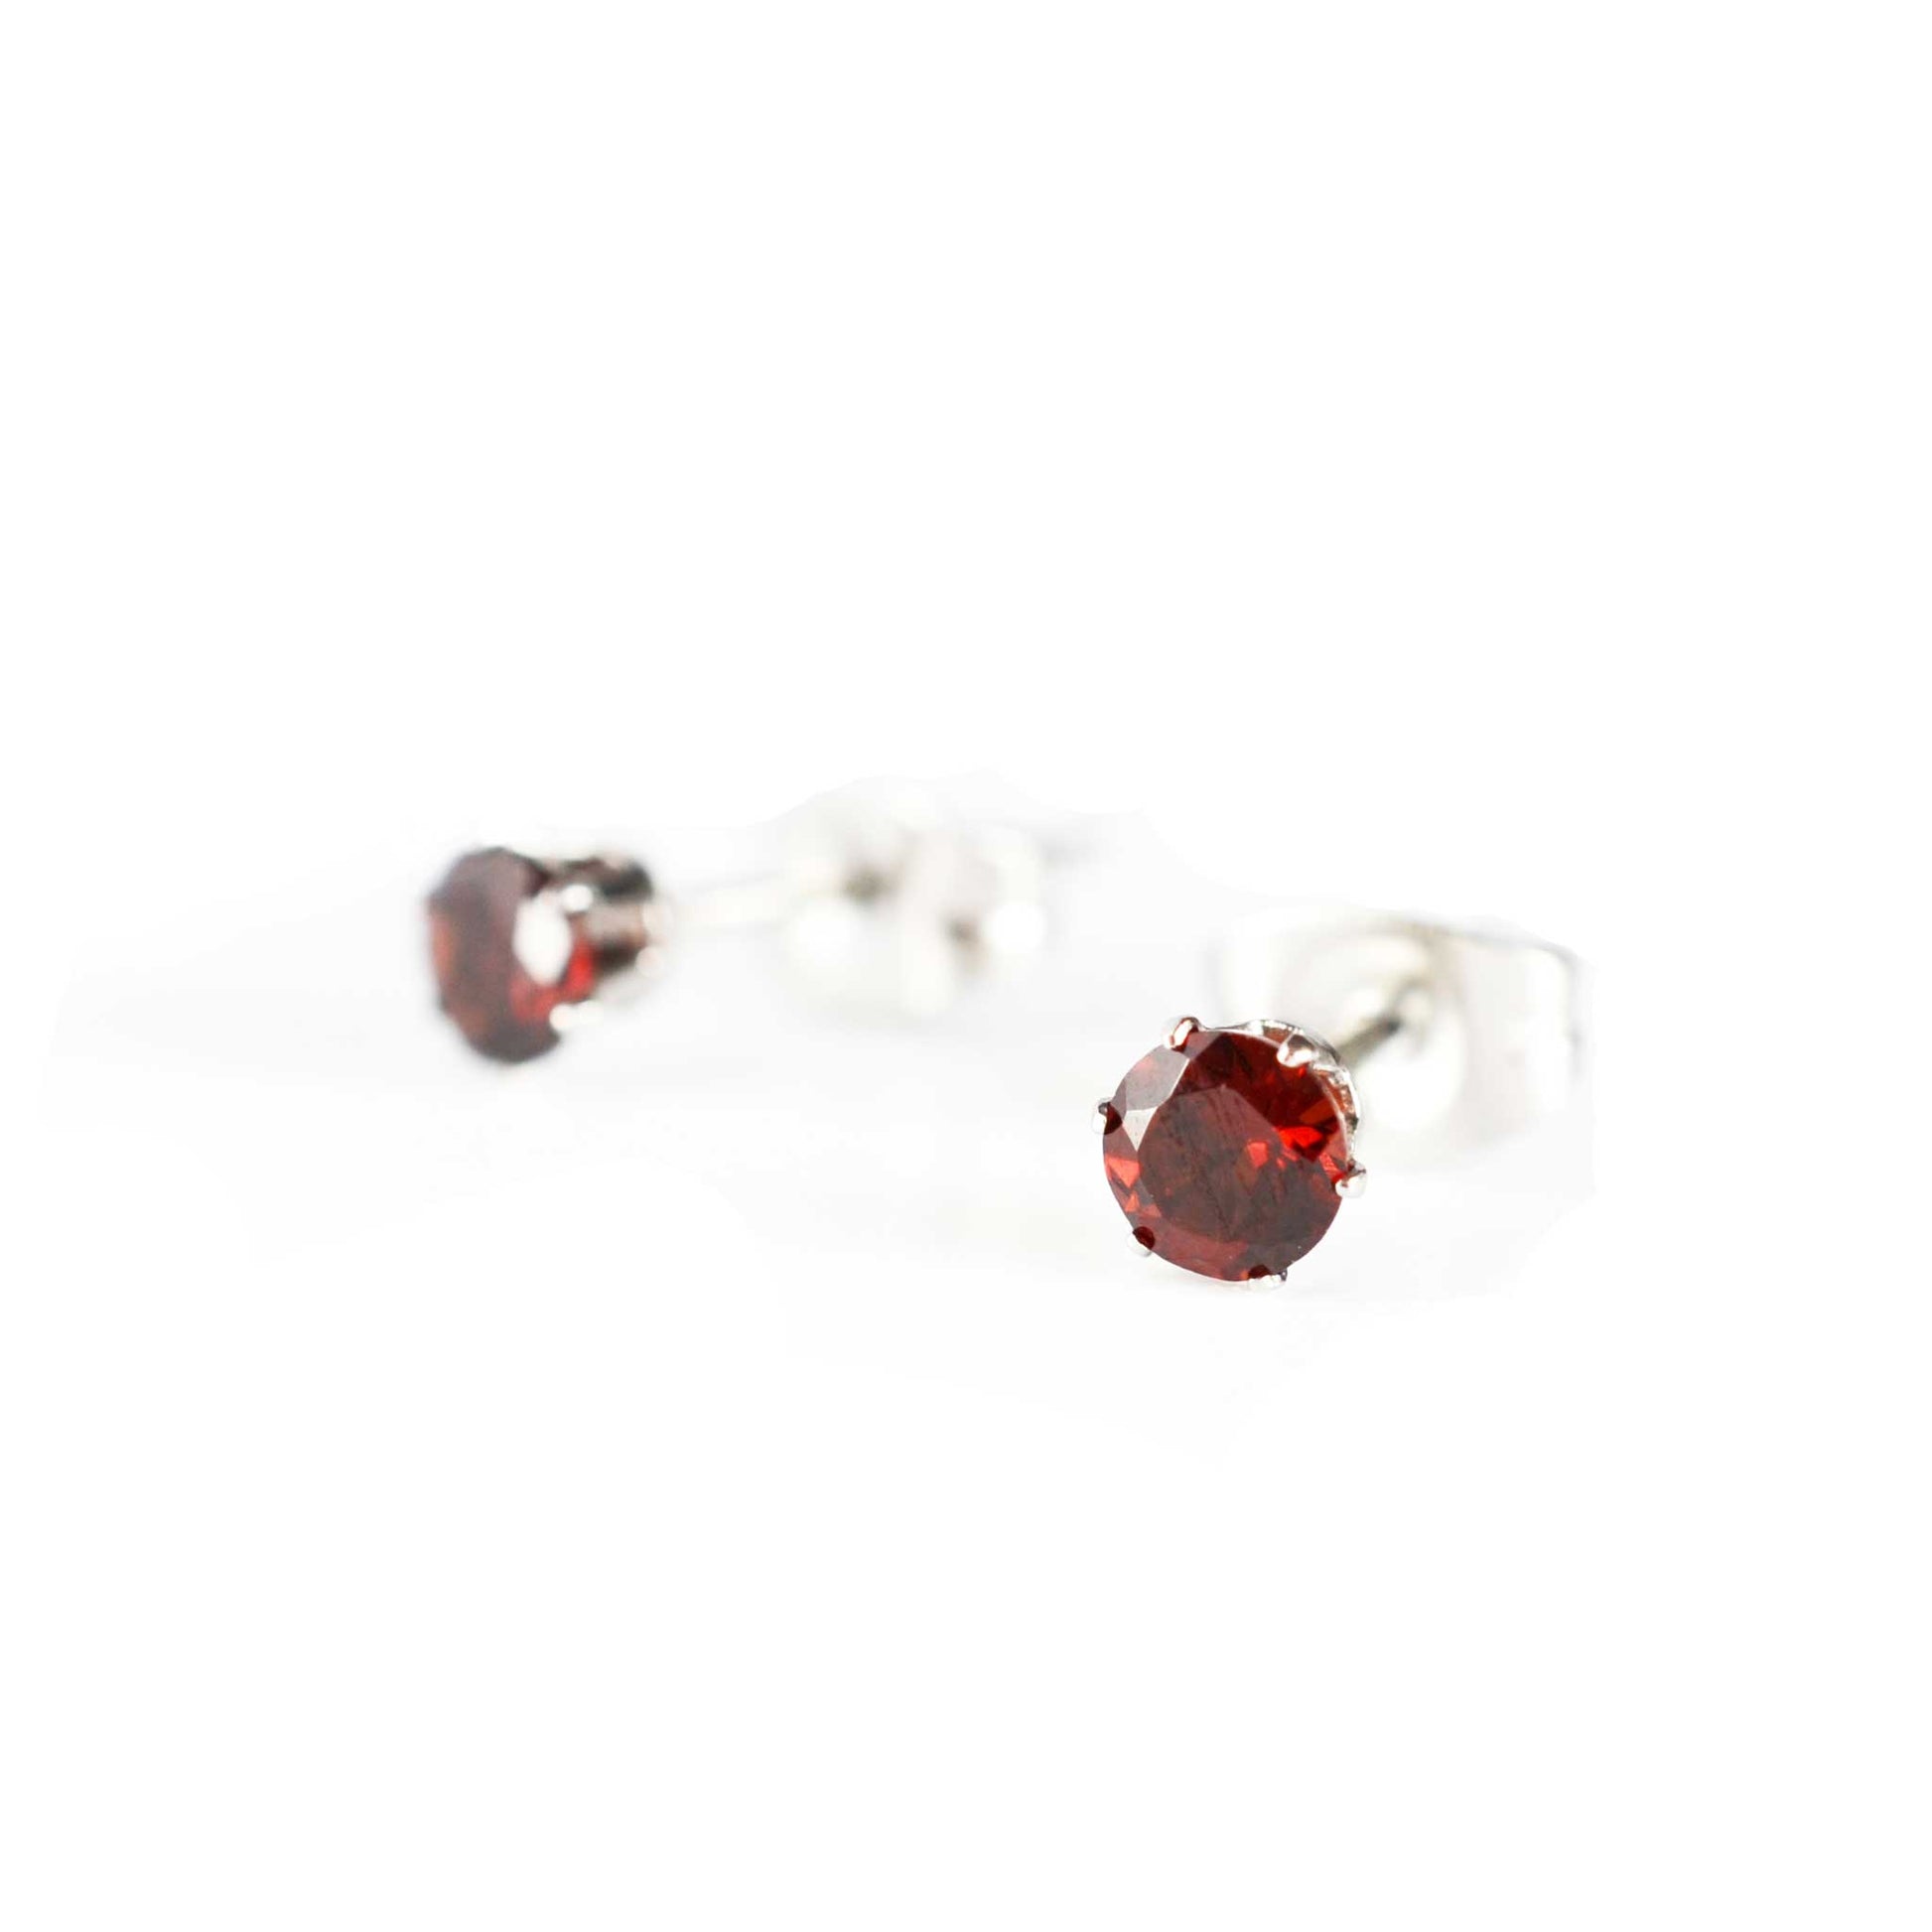 Tiny dark red Garnet stud earrings on white background